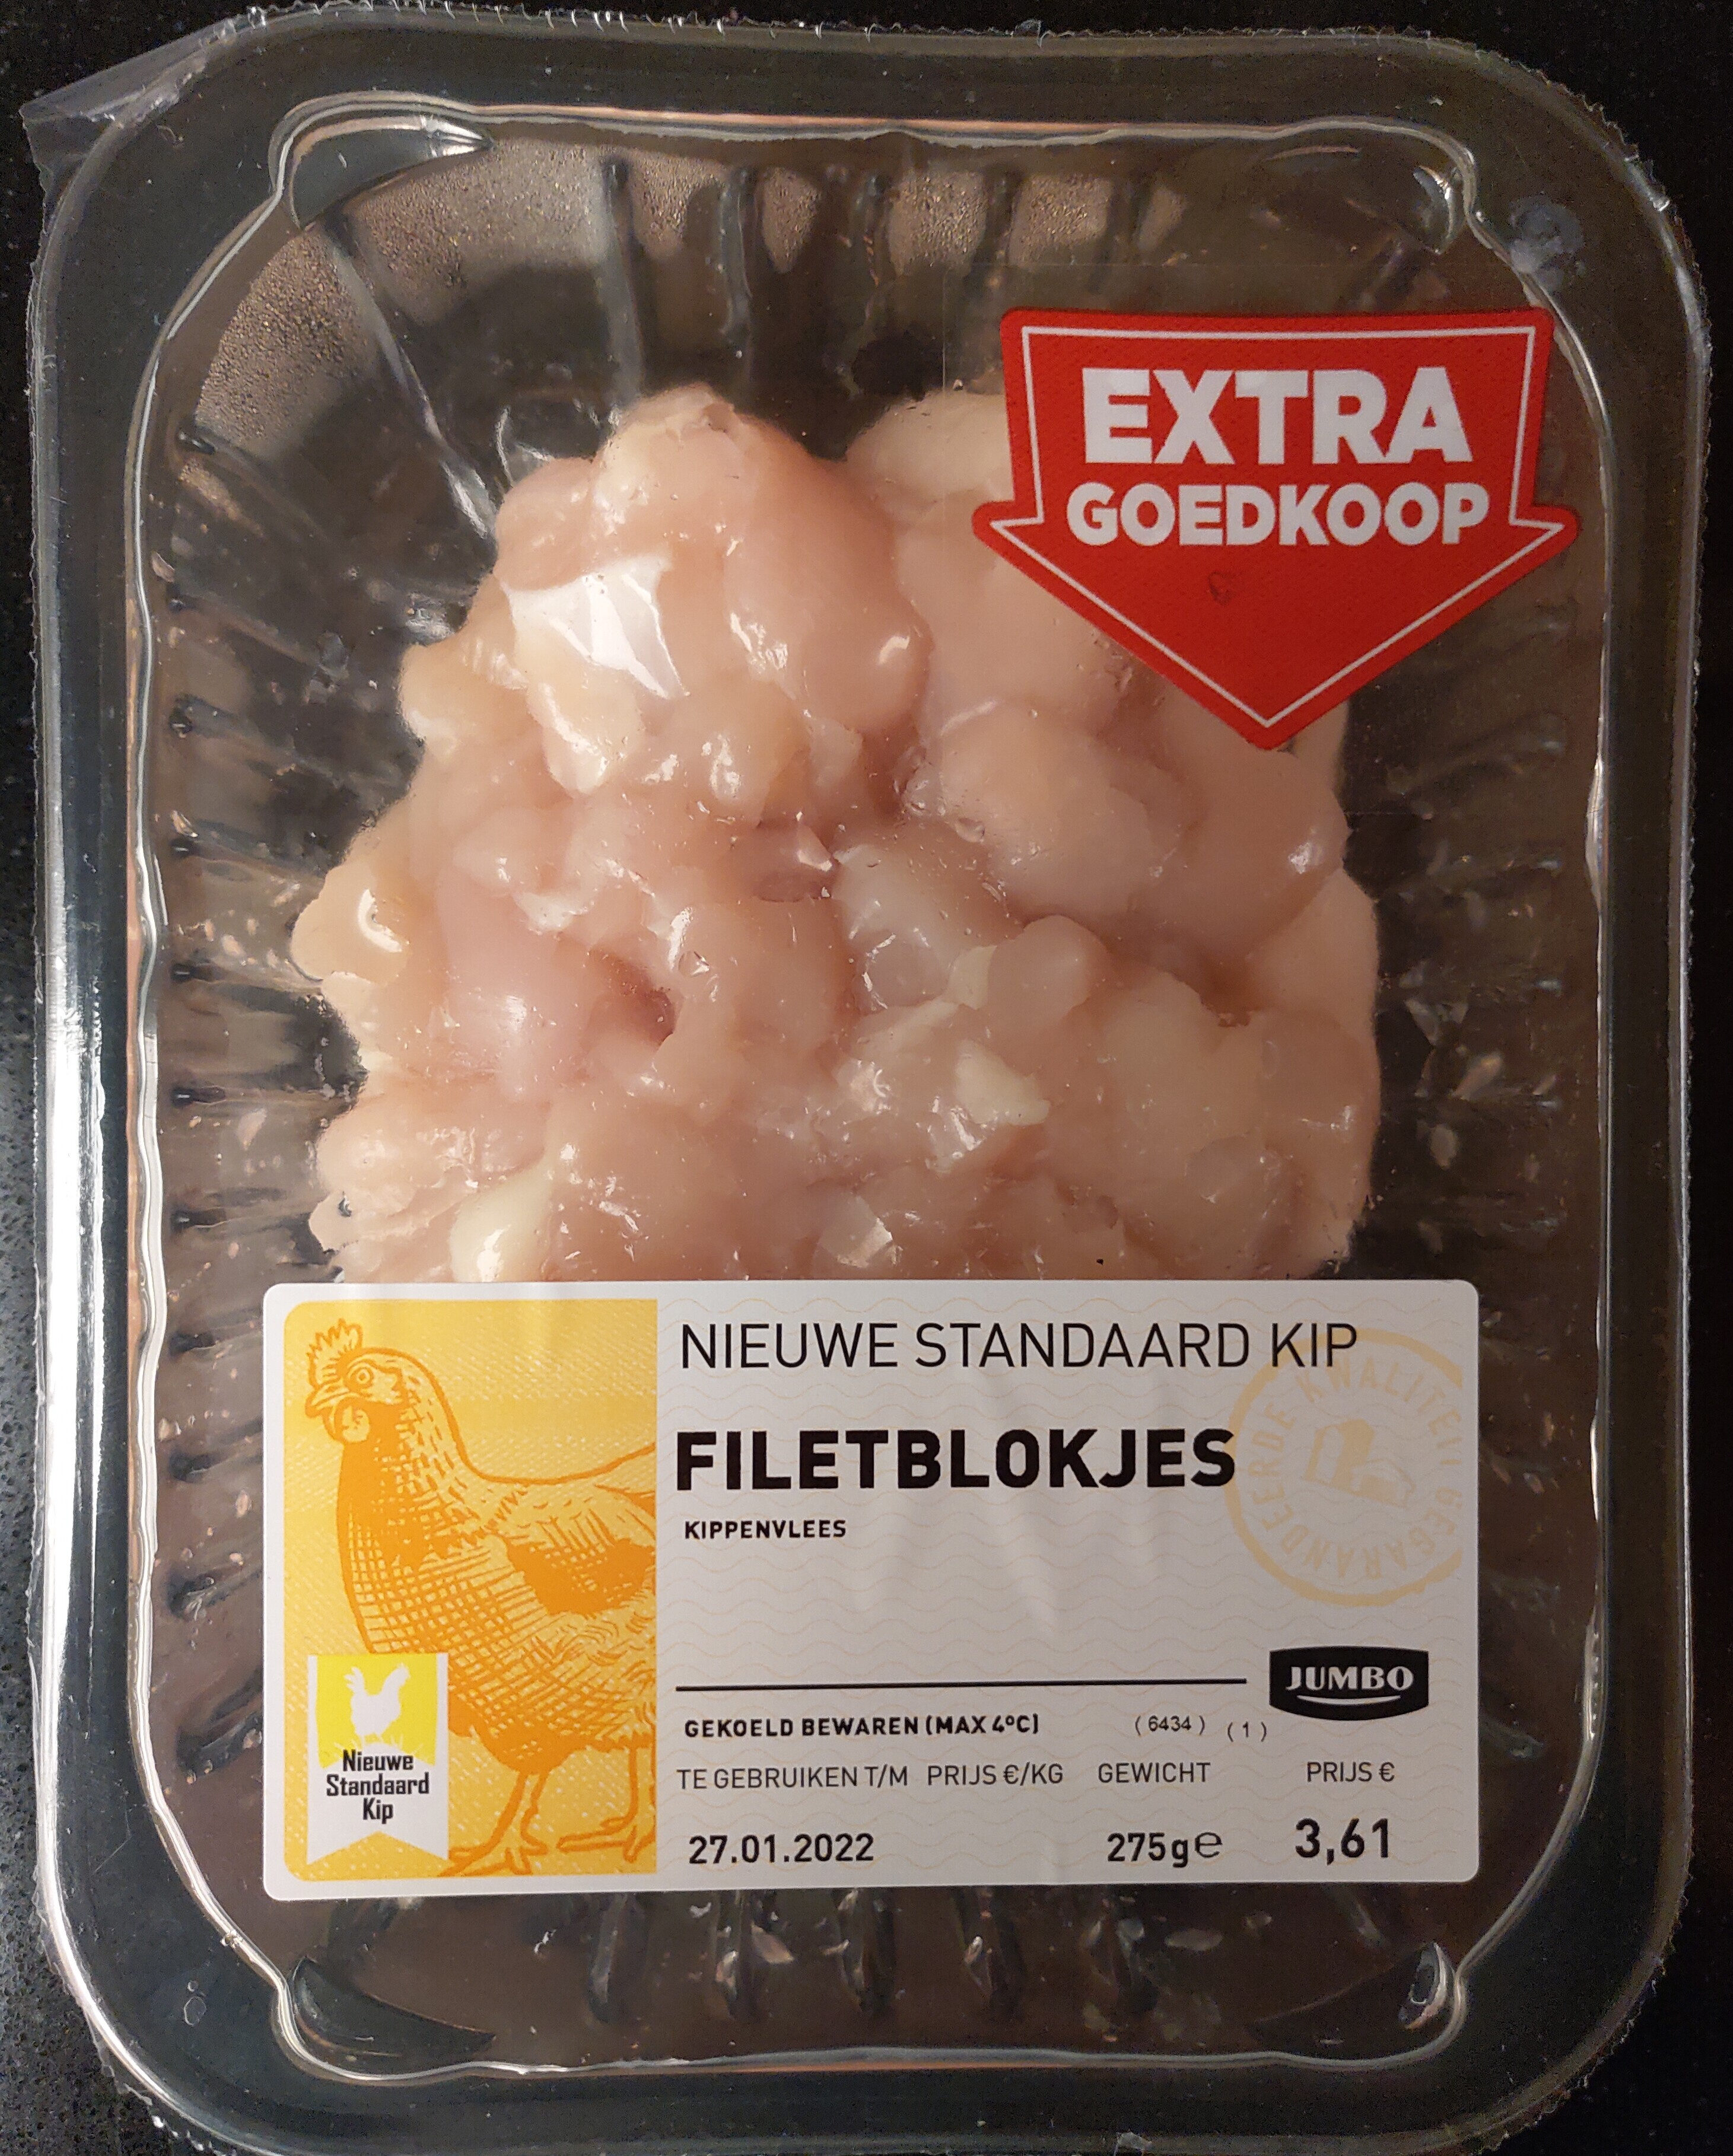 Filetblokjes kippenvlees - Product